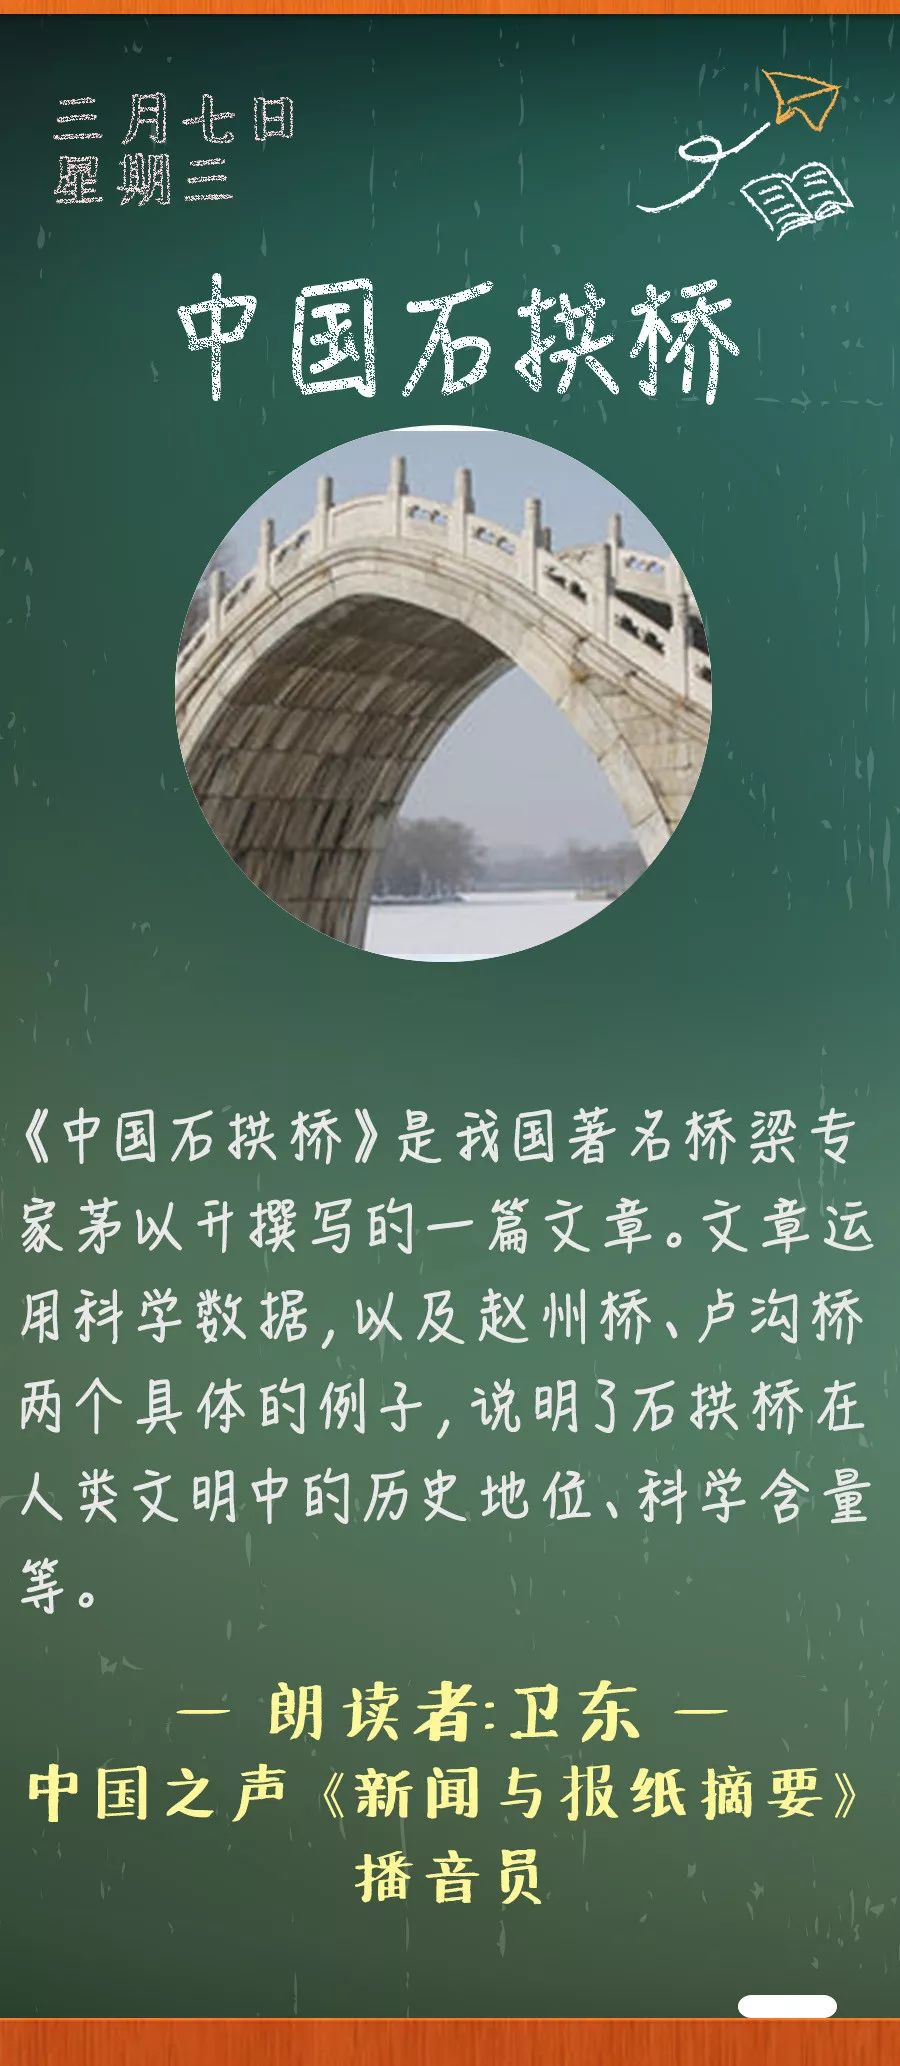 中国石拱桥》丨那些年,我们一起读过的课文